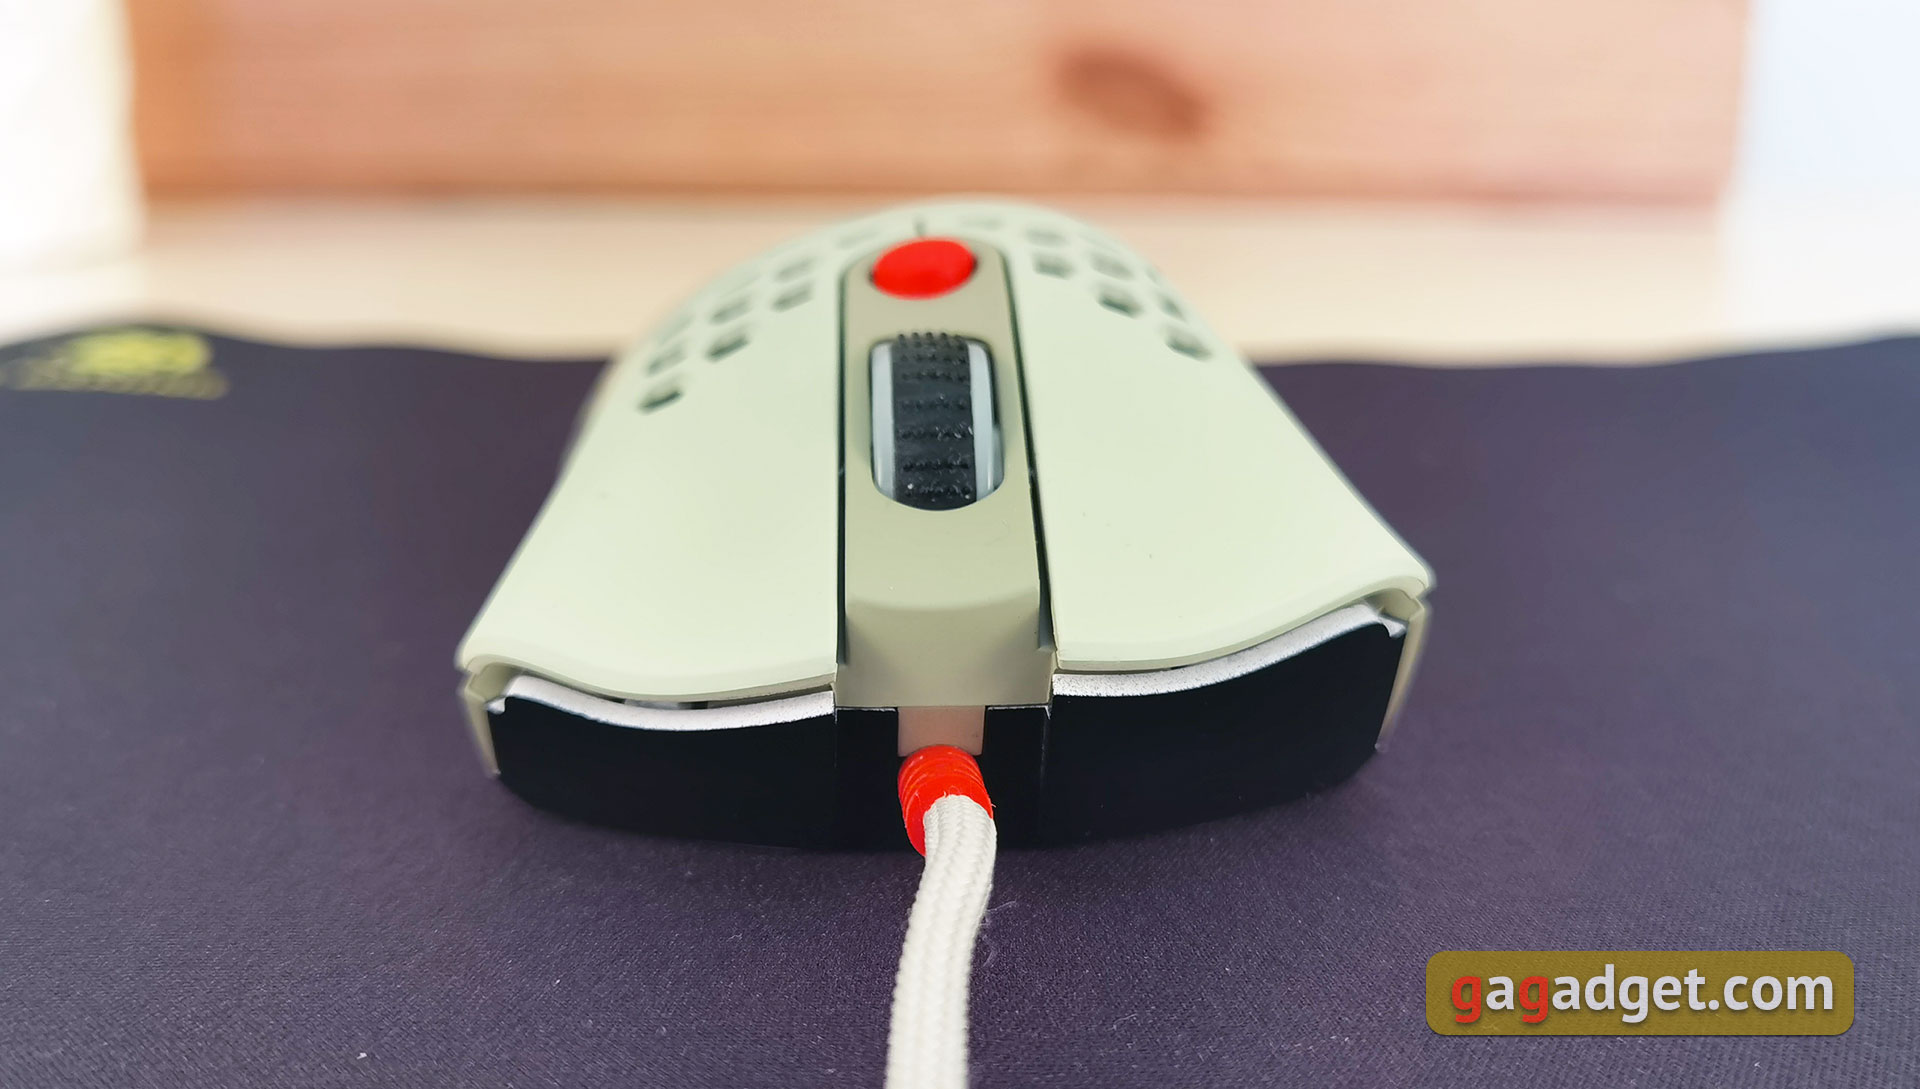 2E Gaming HyperSpeed Pro Überblick: Eine leichte Gaming-Maus mit einem großartigen Sensor-13